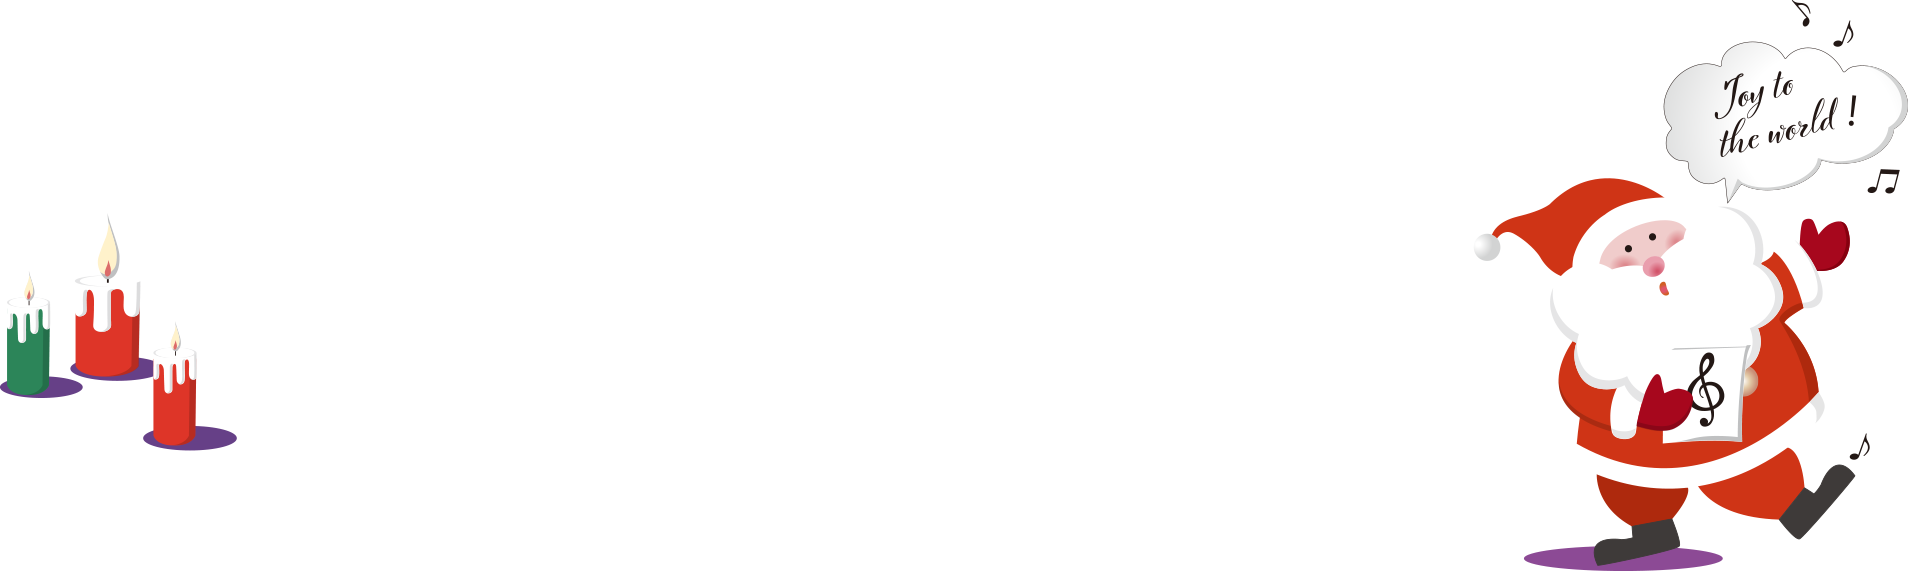 CHRISTMAS CONCERT